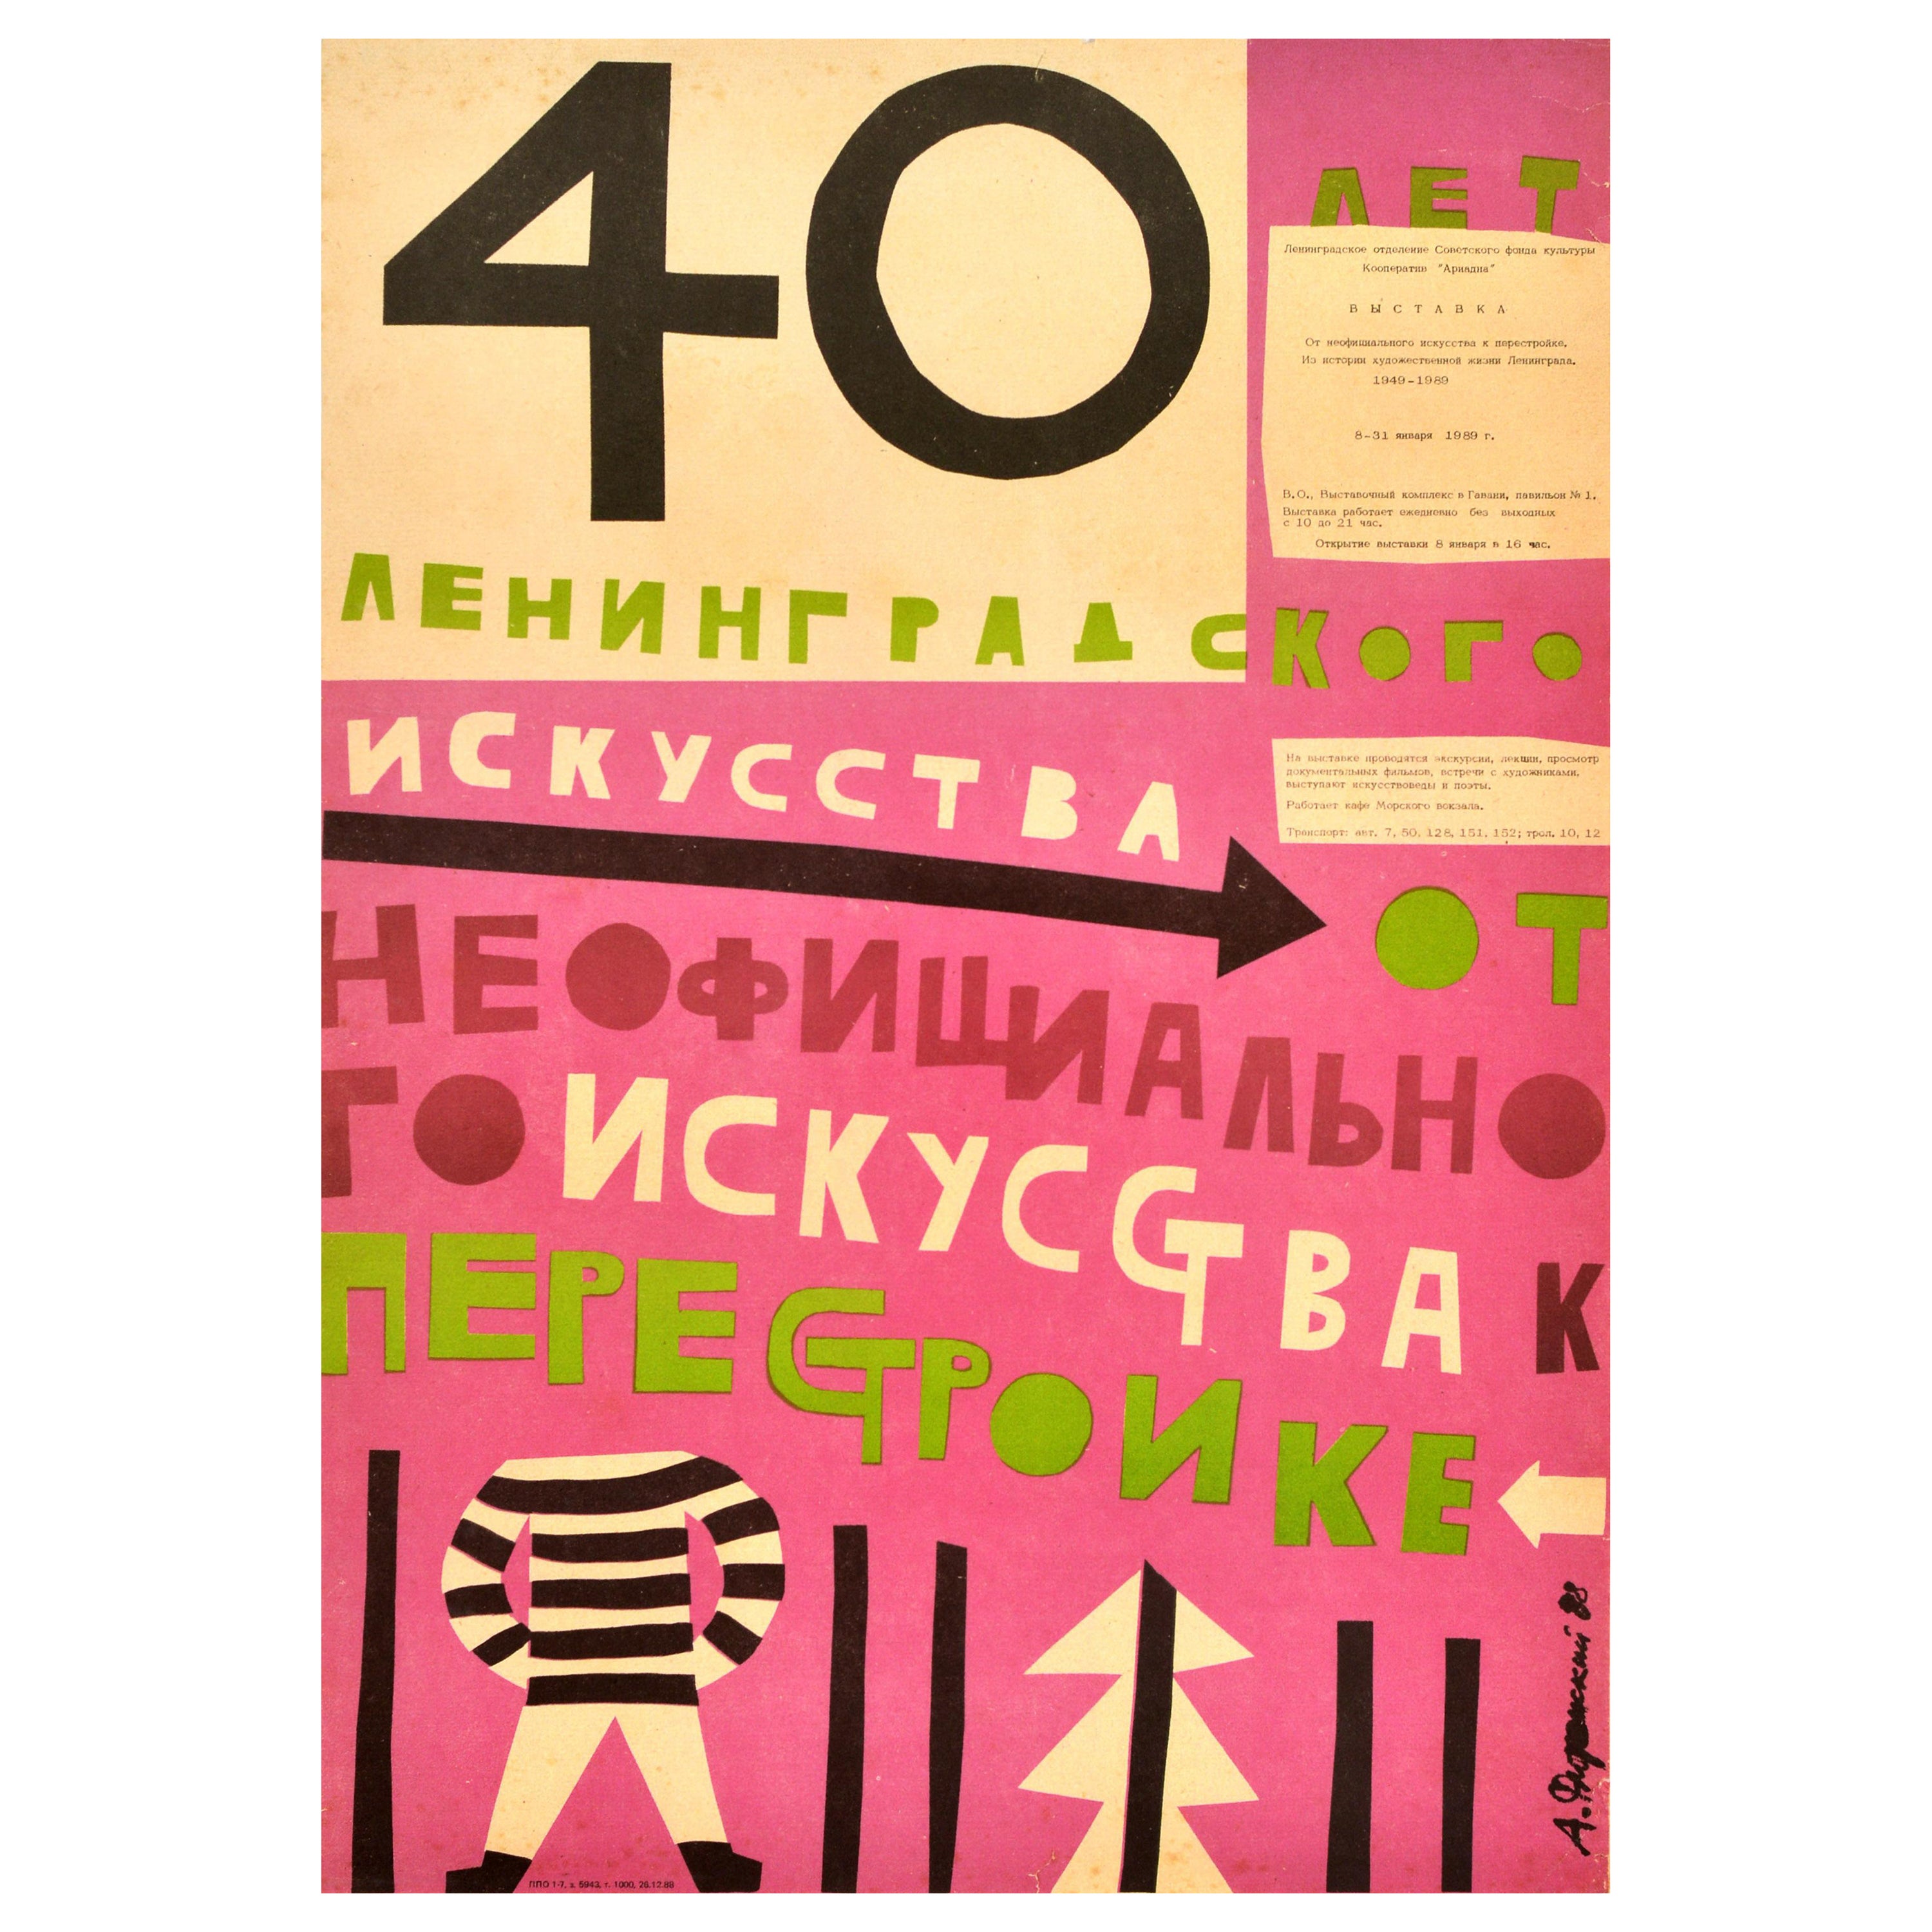 Affiche vintage originale d'exposition soviétique « Unofficial Art to Perestroika Russia »